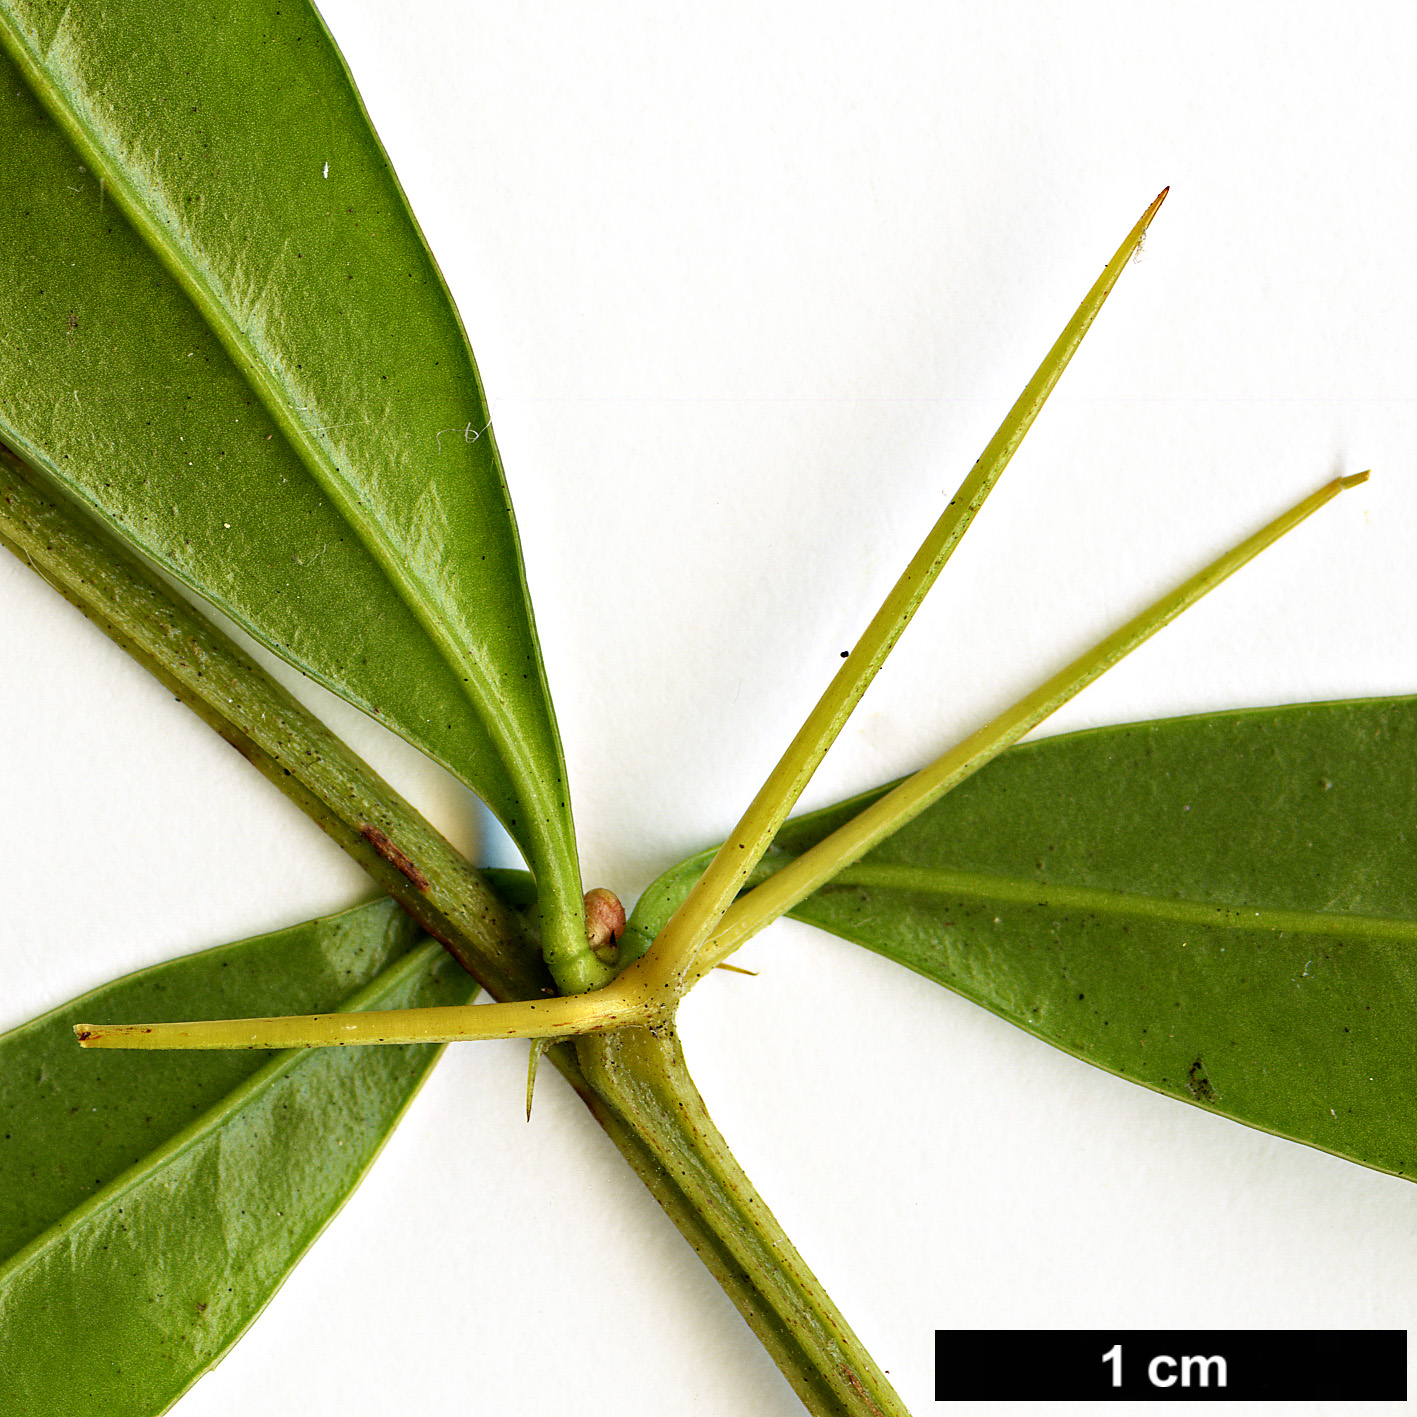 High resolution image: Family: Berberidaceae - Genus: Berberis - Taxon: hayatana